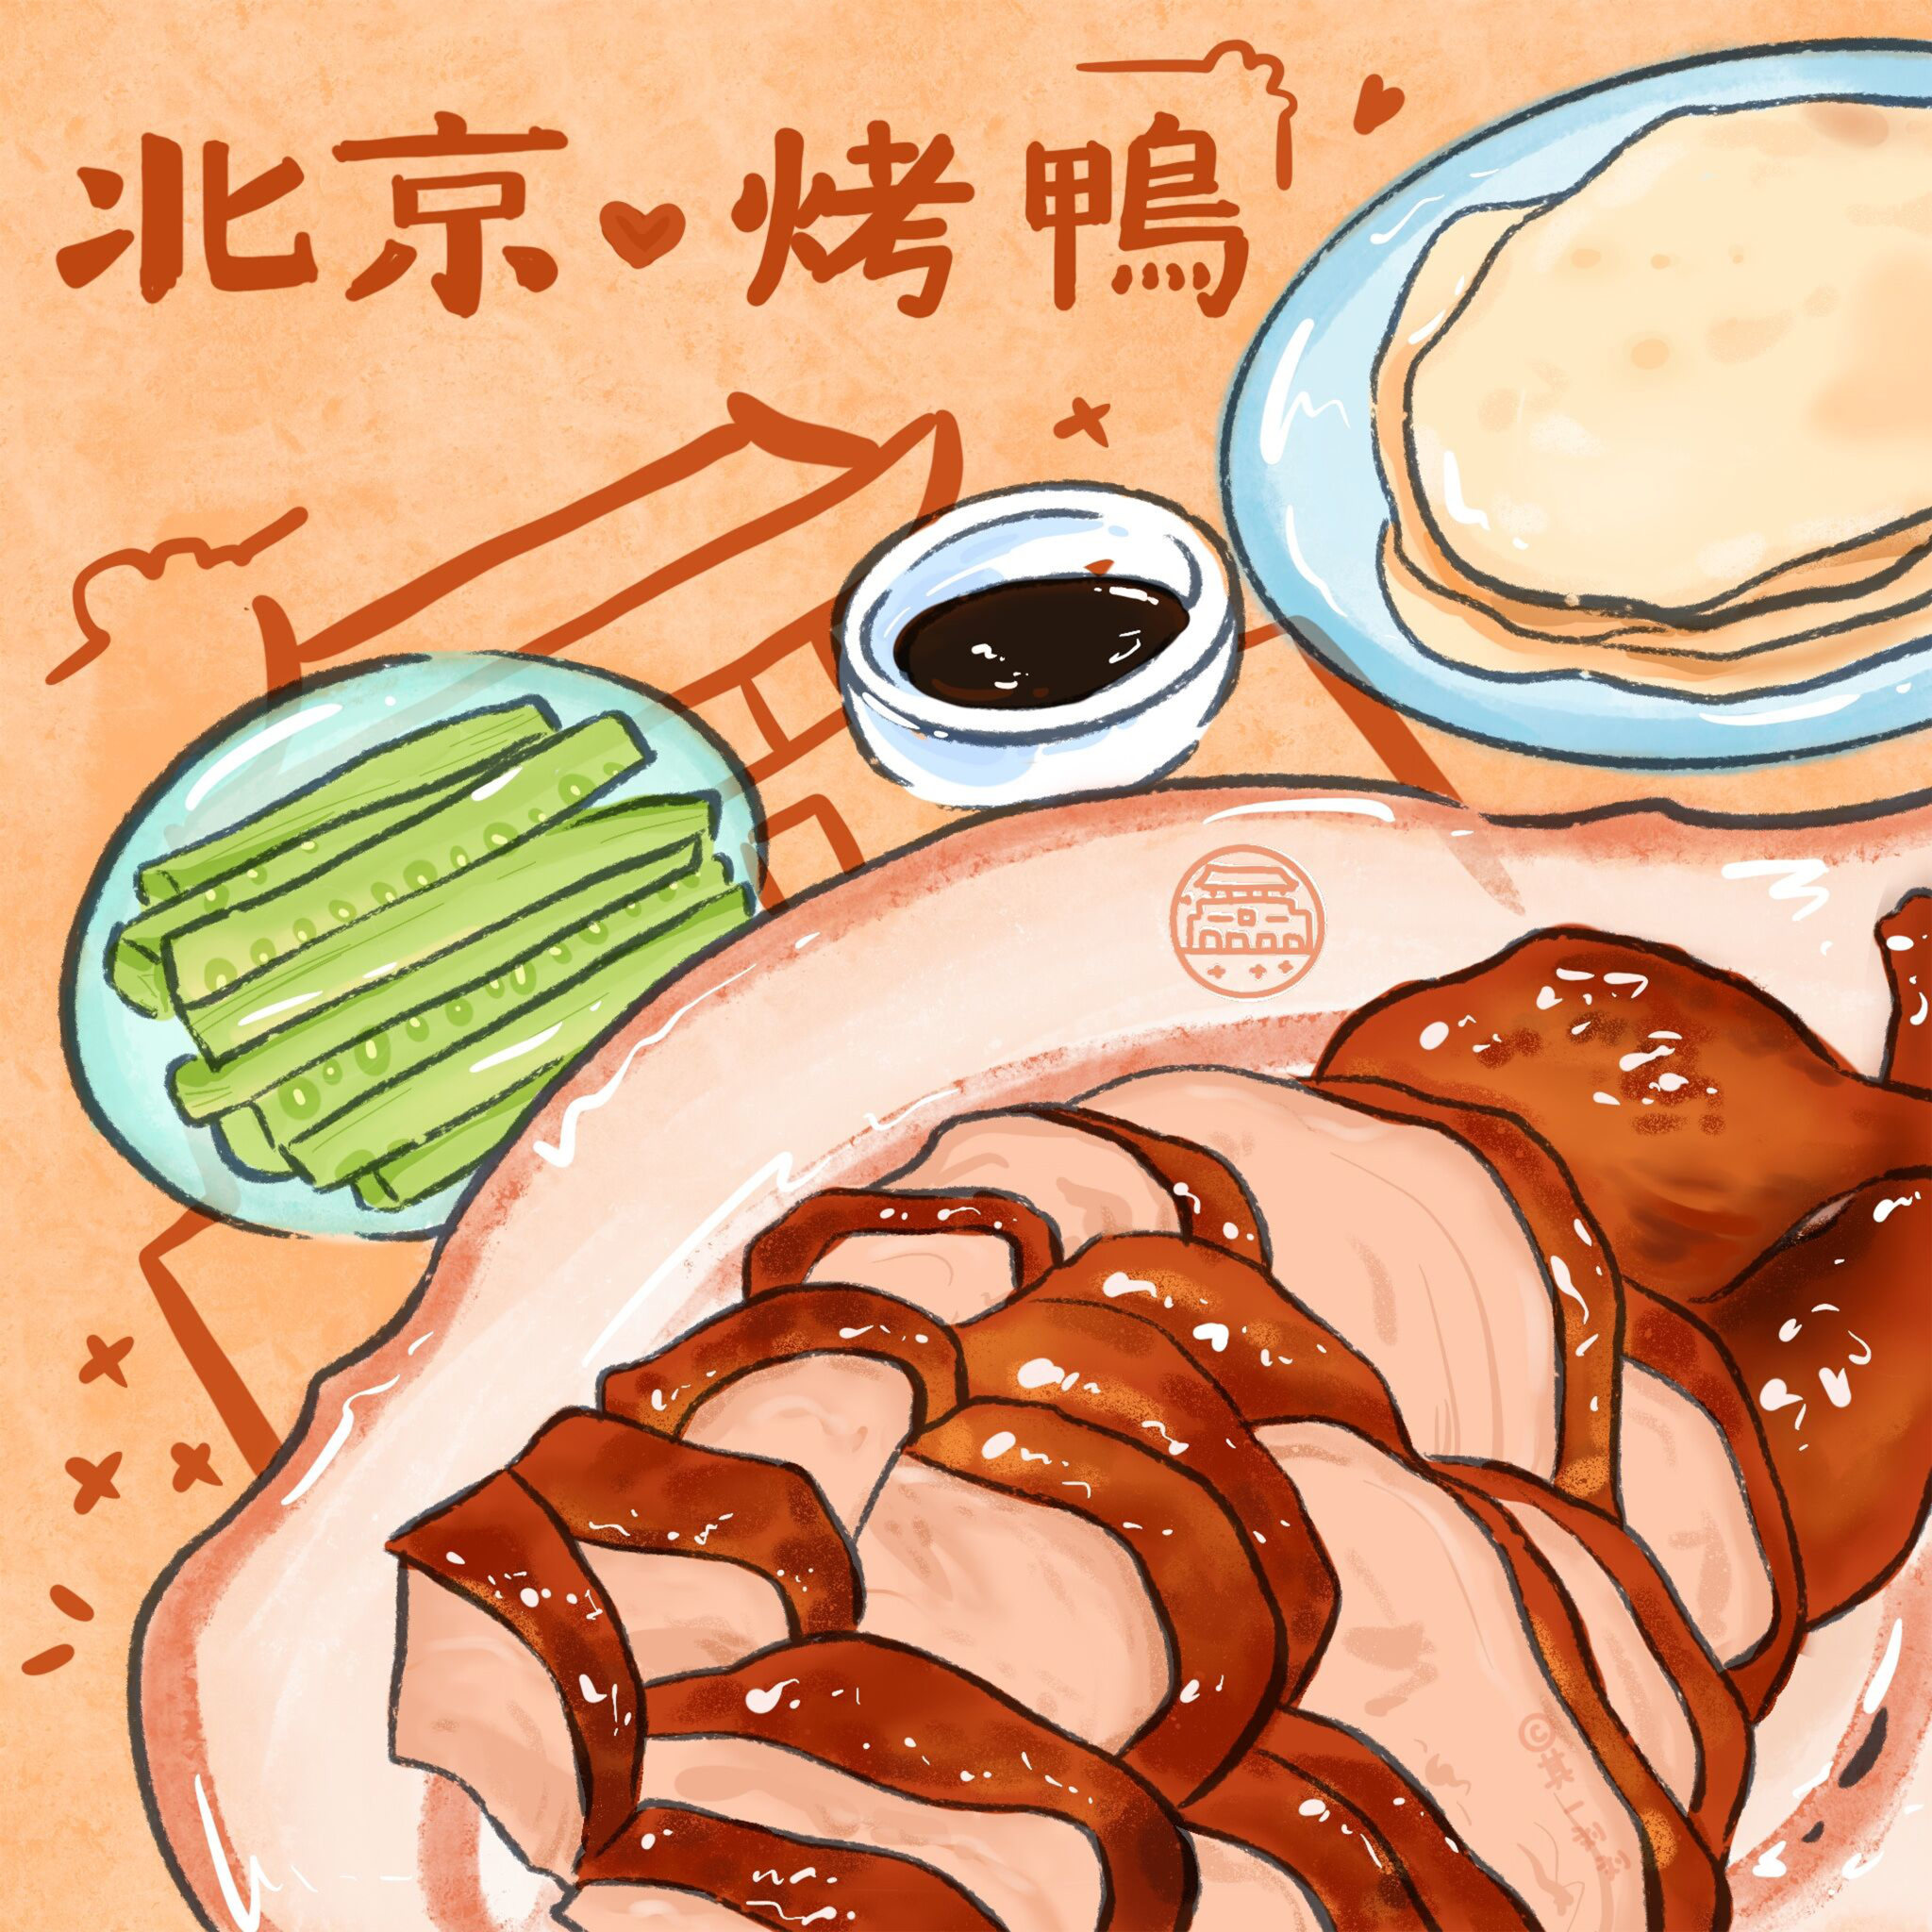 北京烤鸭简笔画 儿童图片